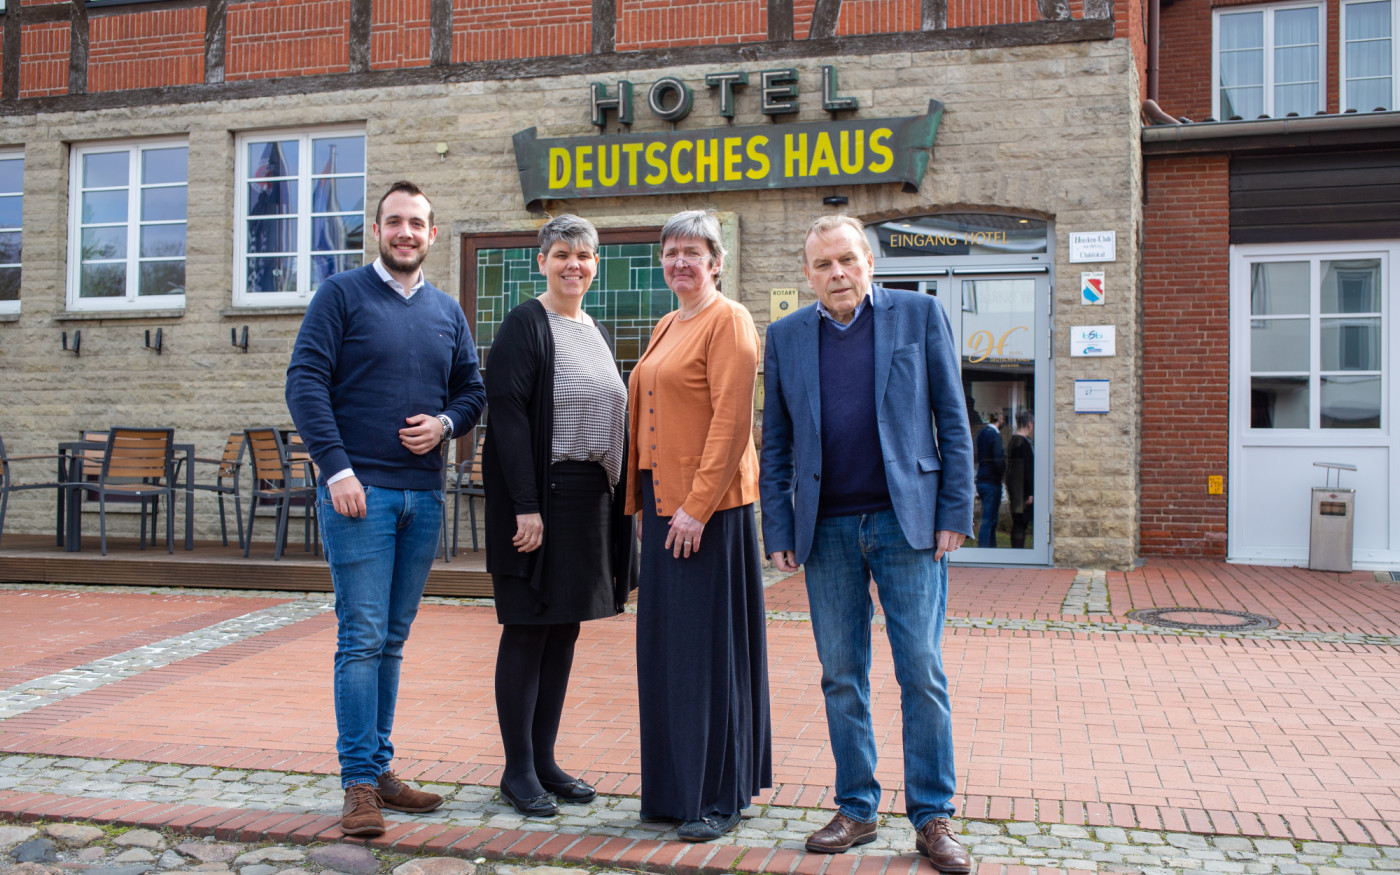 Geschäftsleute können im Hotel Deutsches Haus noch übernachten, das Restaurant bleibt aber vorerst zu